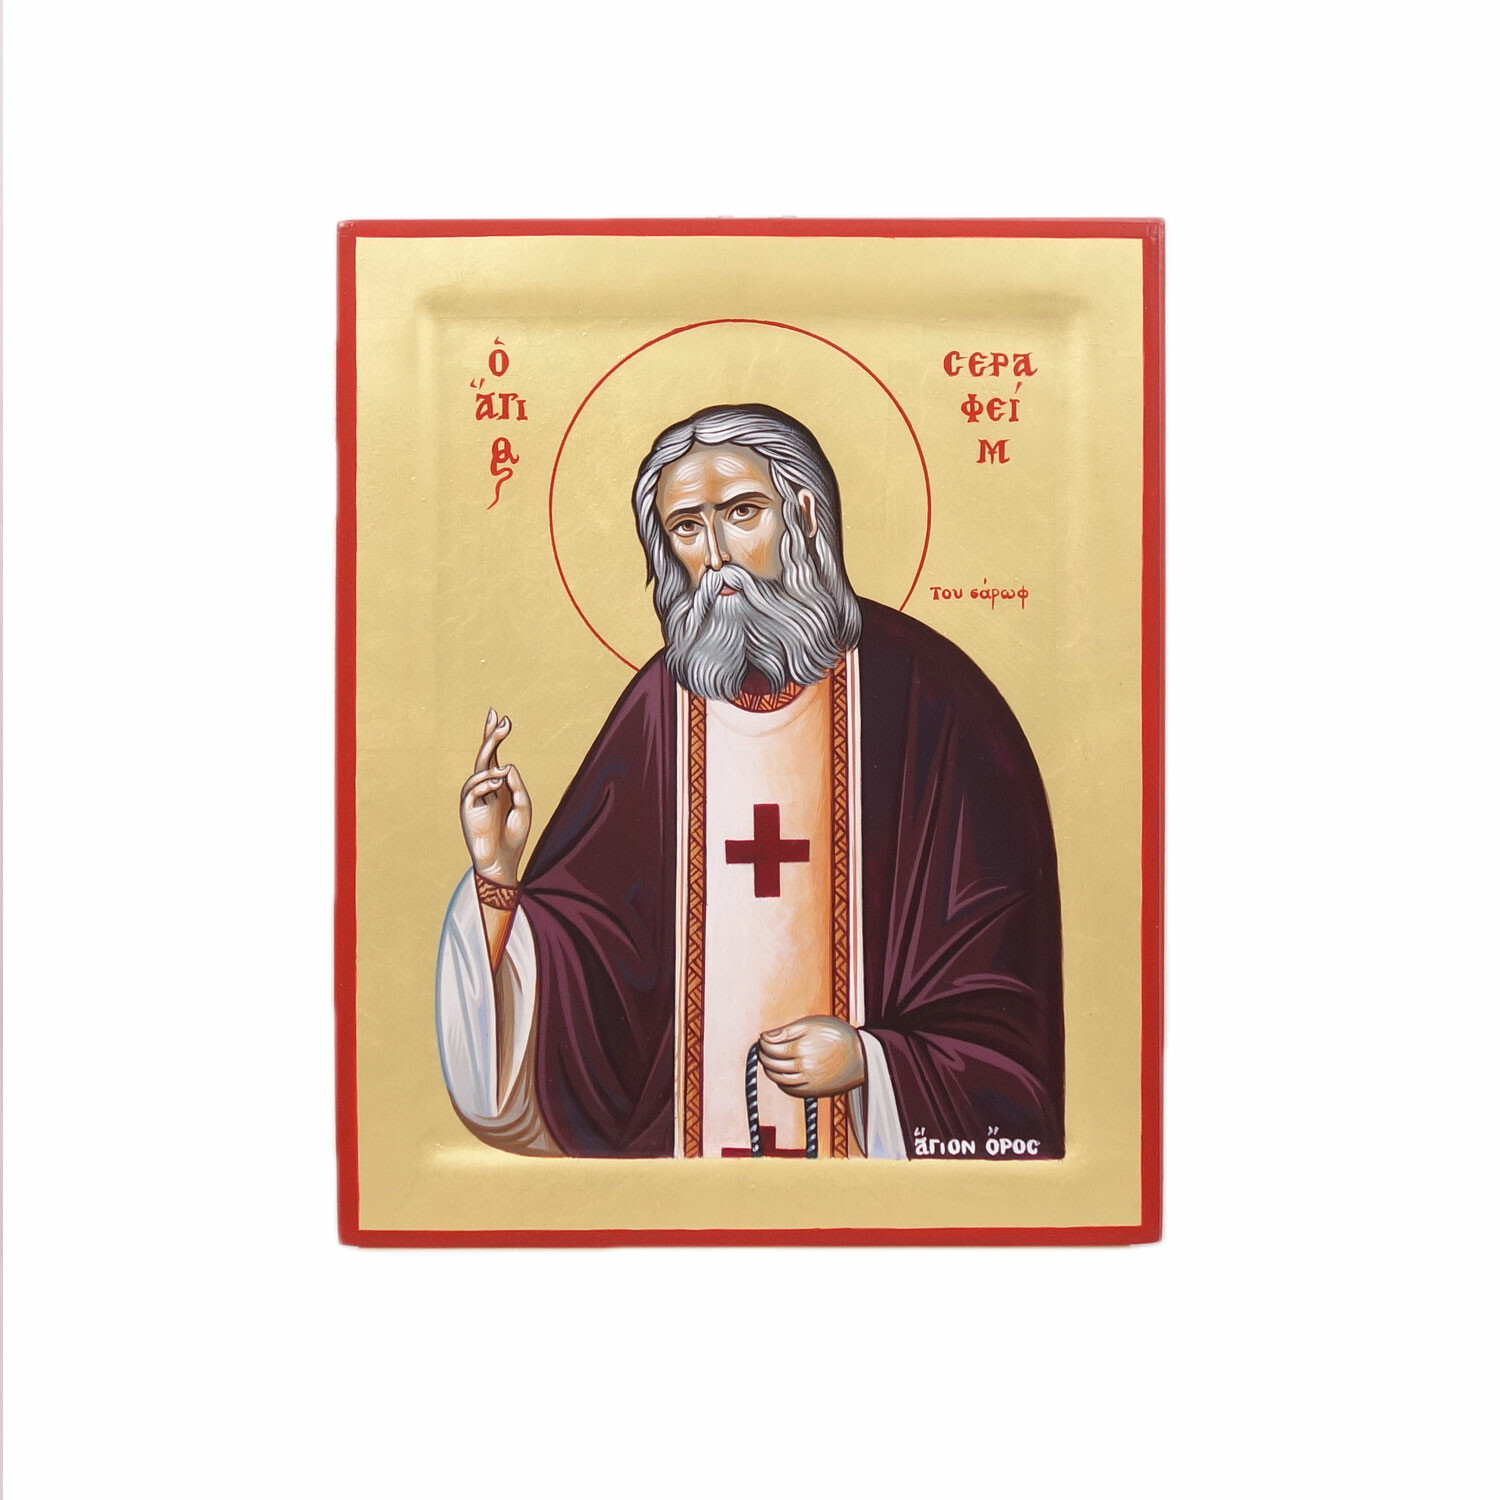 Saint Serafim Sarof